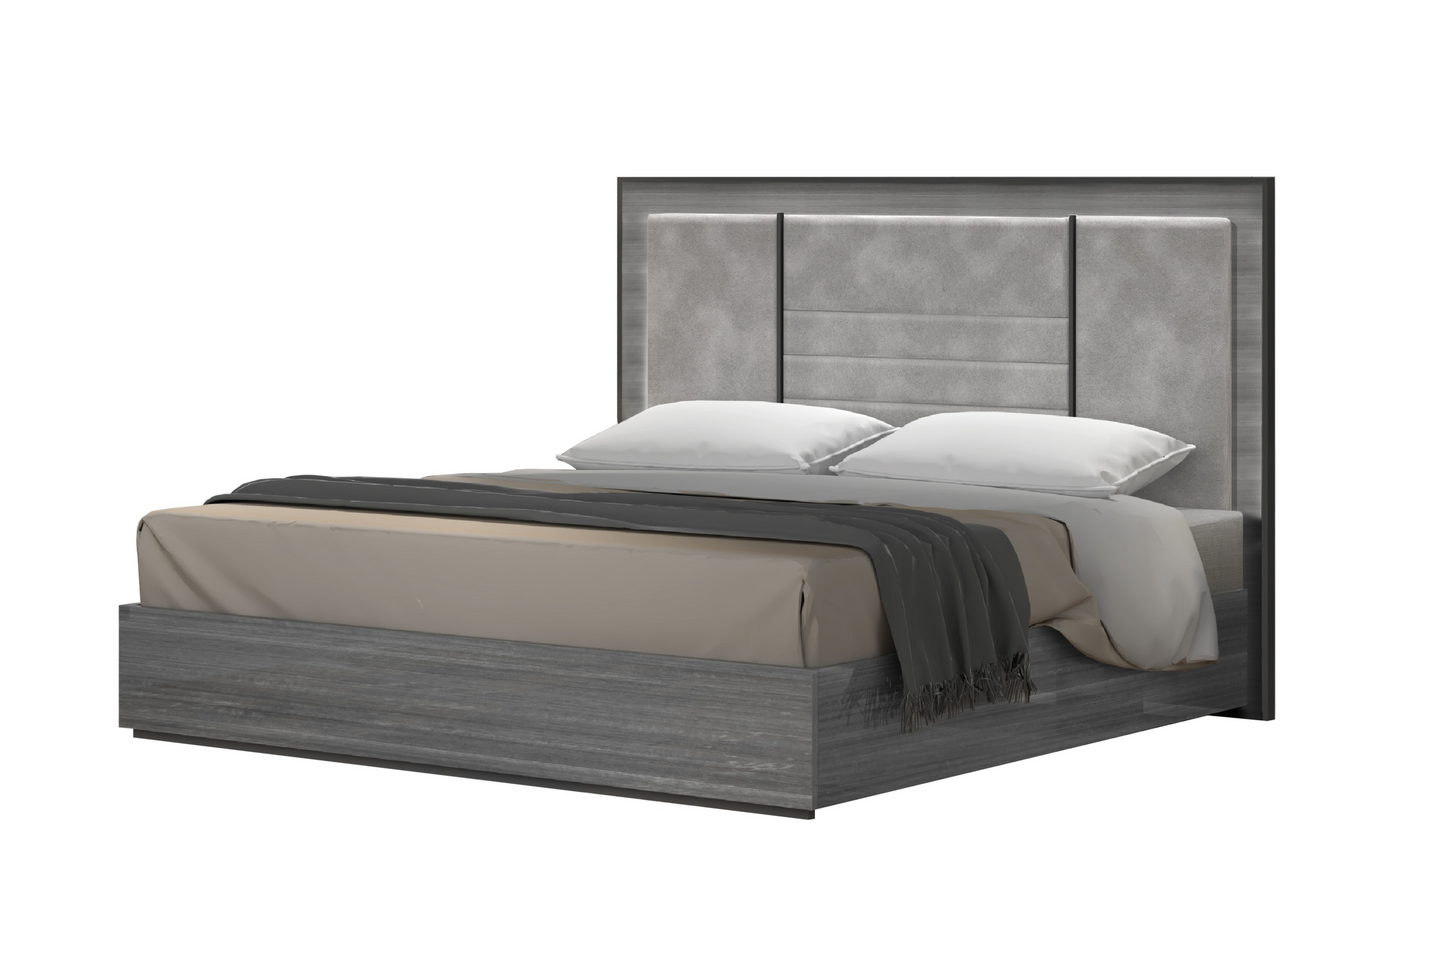 Blade Premium Bedroom Bed SKU: 17450